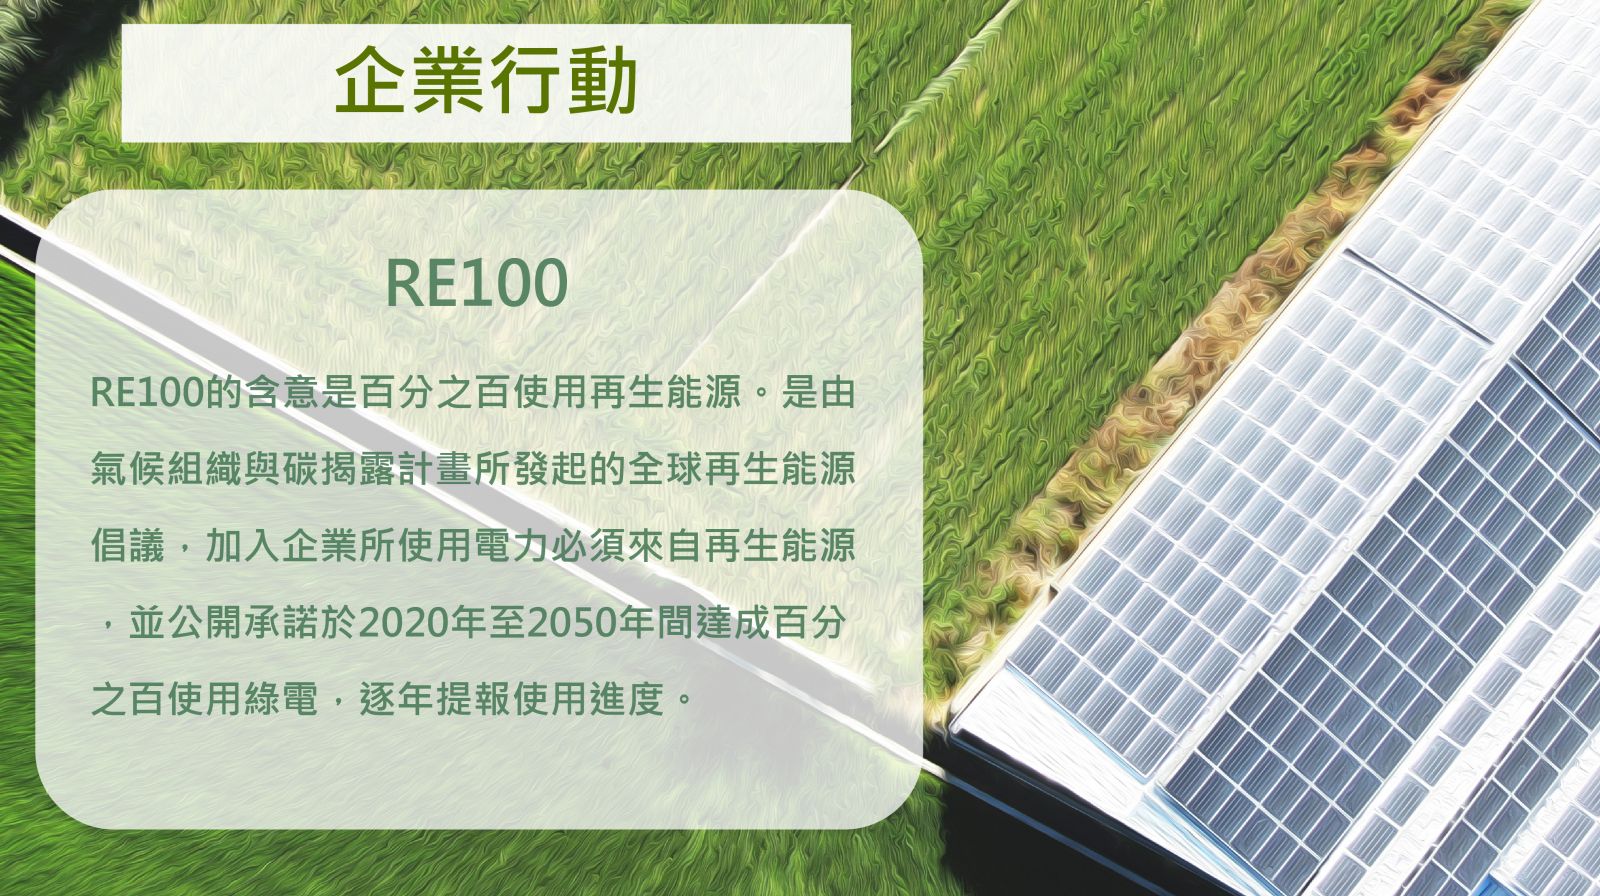 加入RE100需在2050年前達成百分之百使用綠電